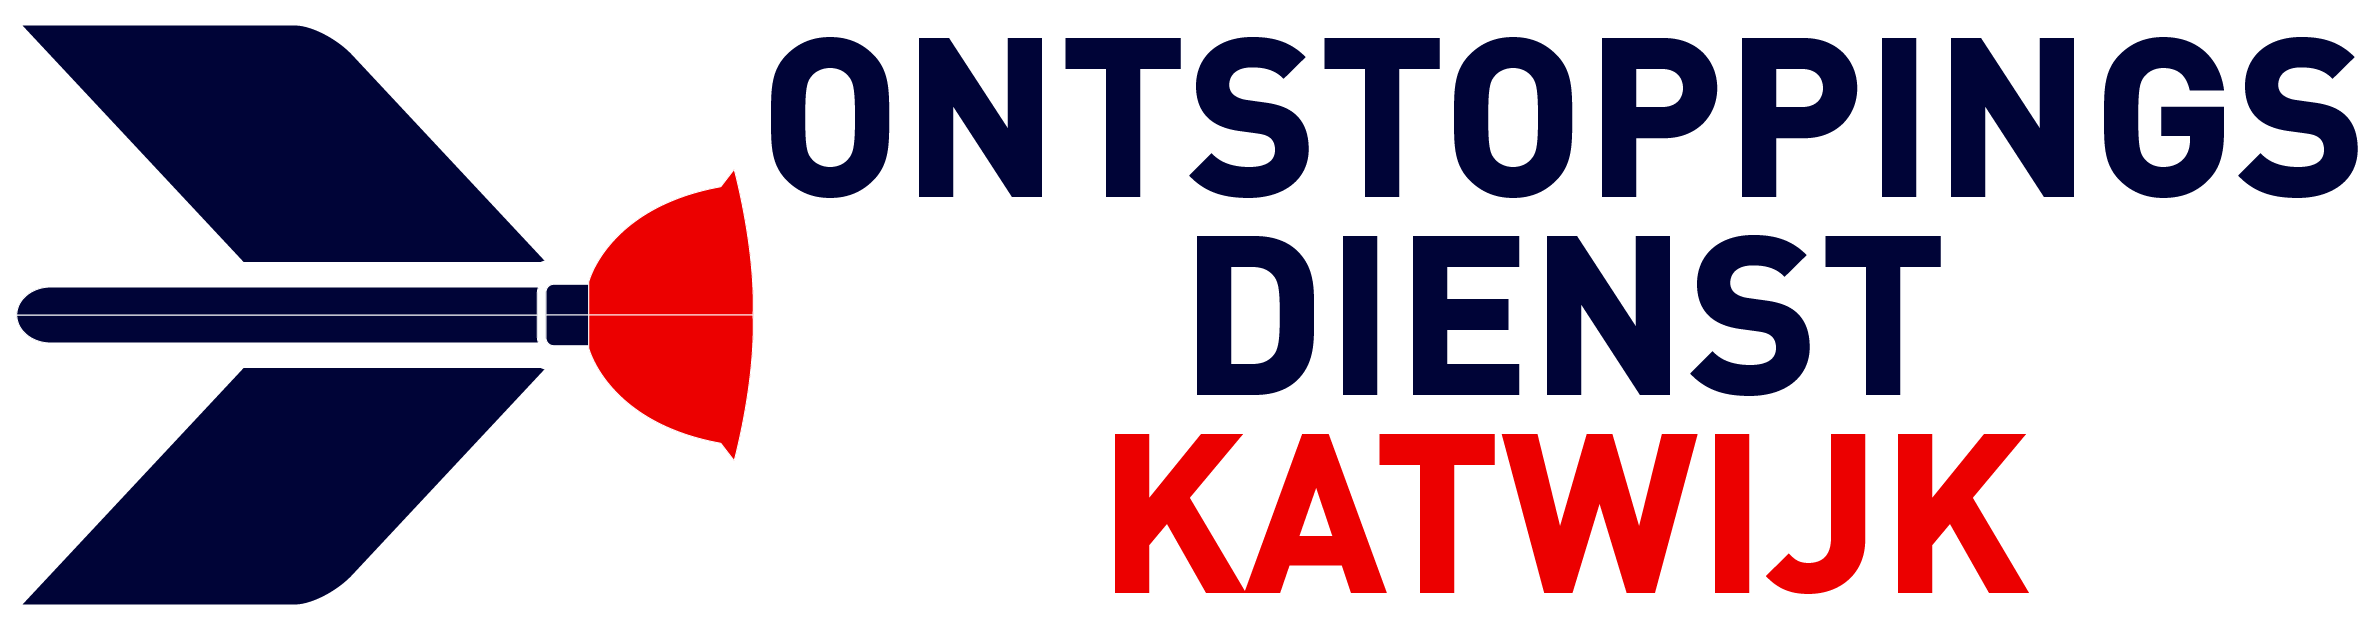 Ontstoppingsdienst Katwijk logo